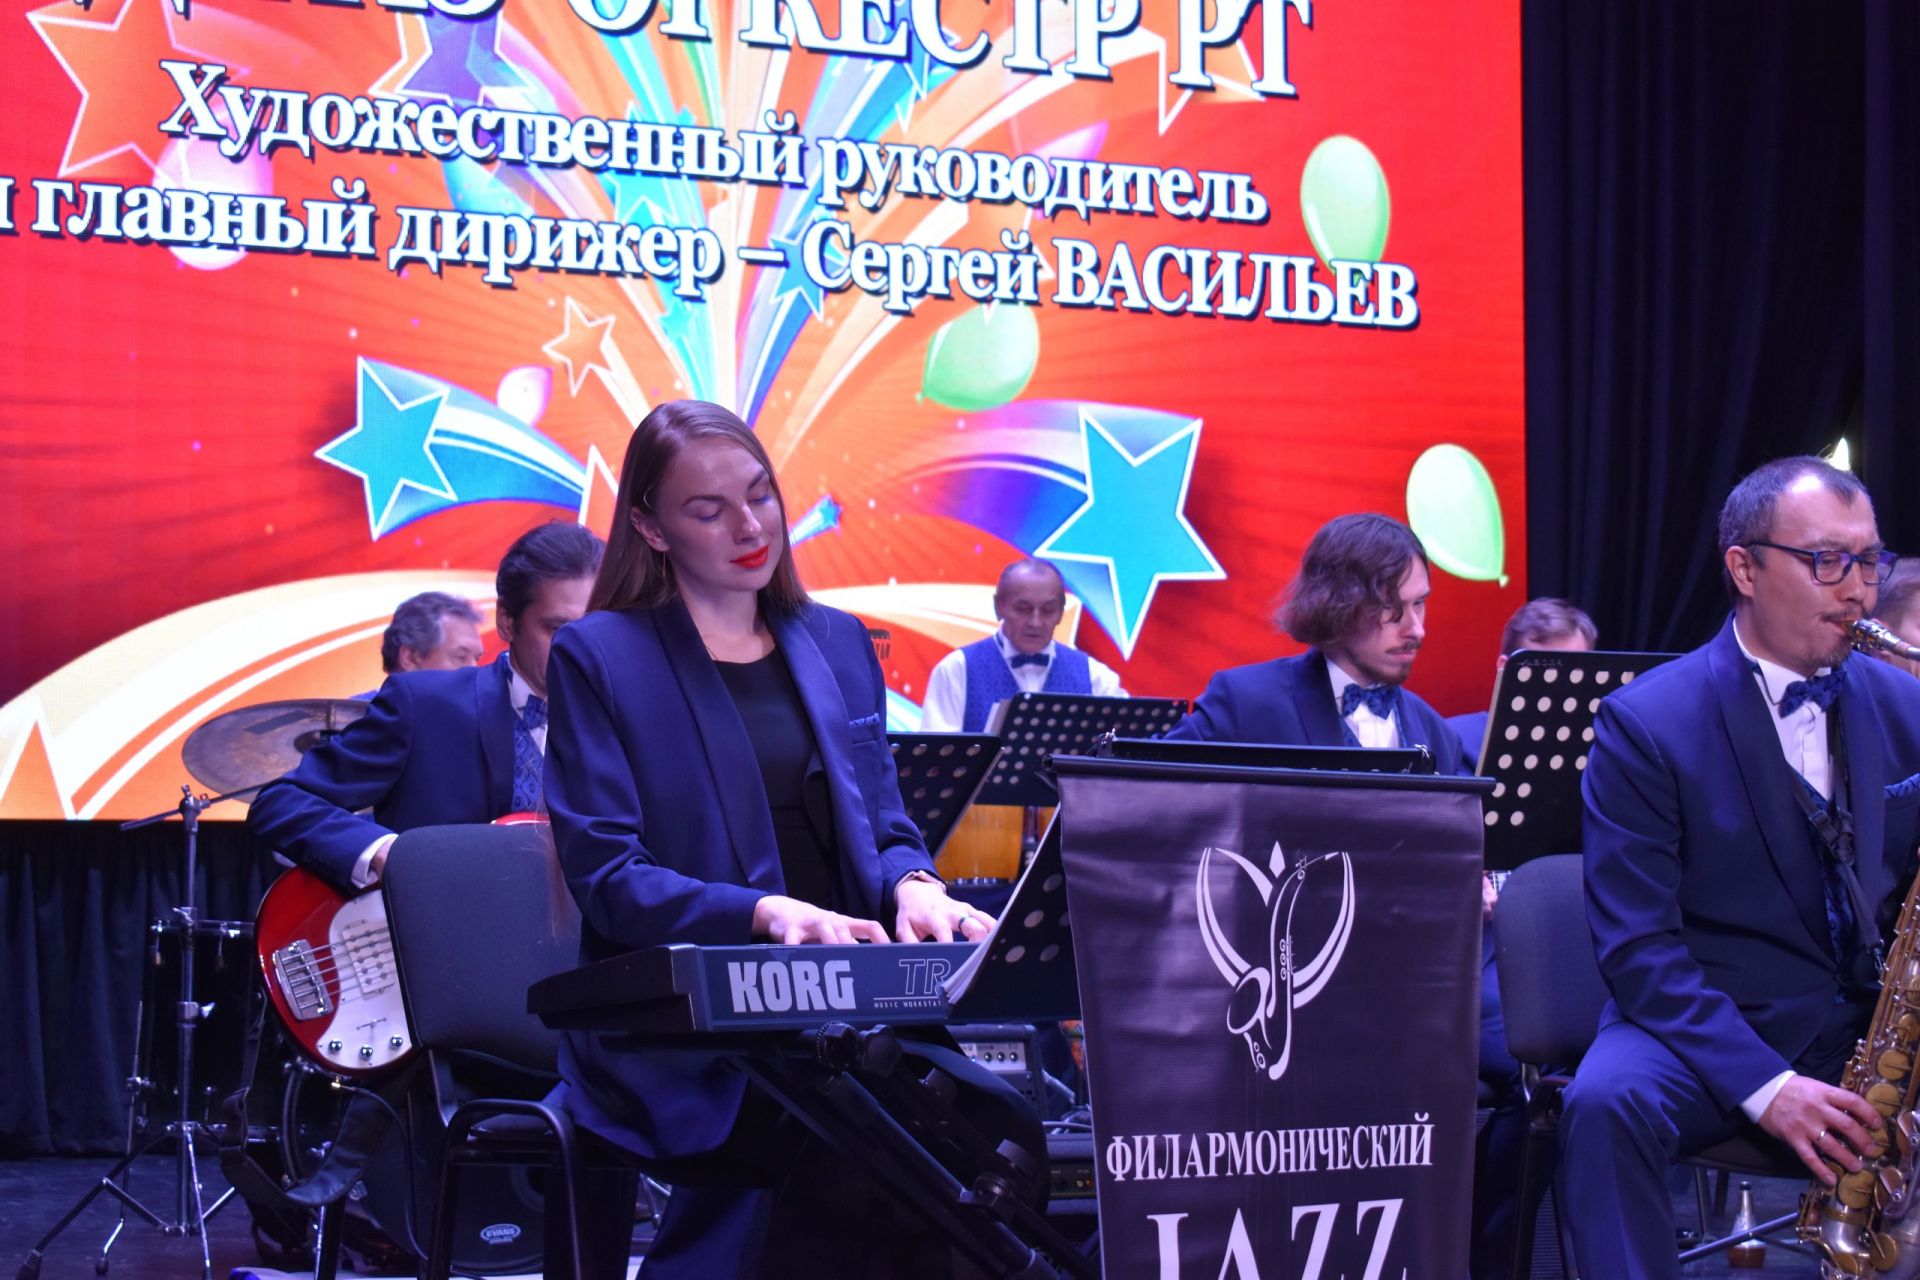 Джазовый оркестр из Казани устроил концерт для алексеевских школьников